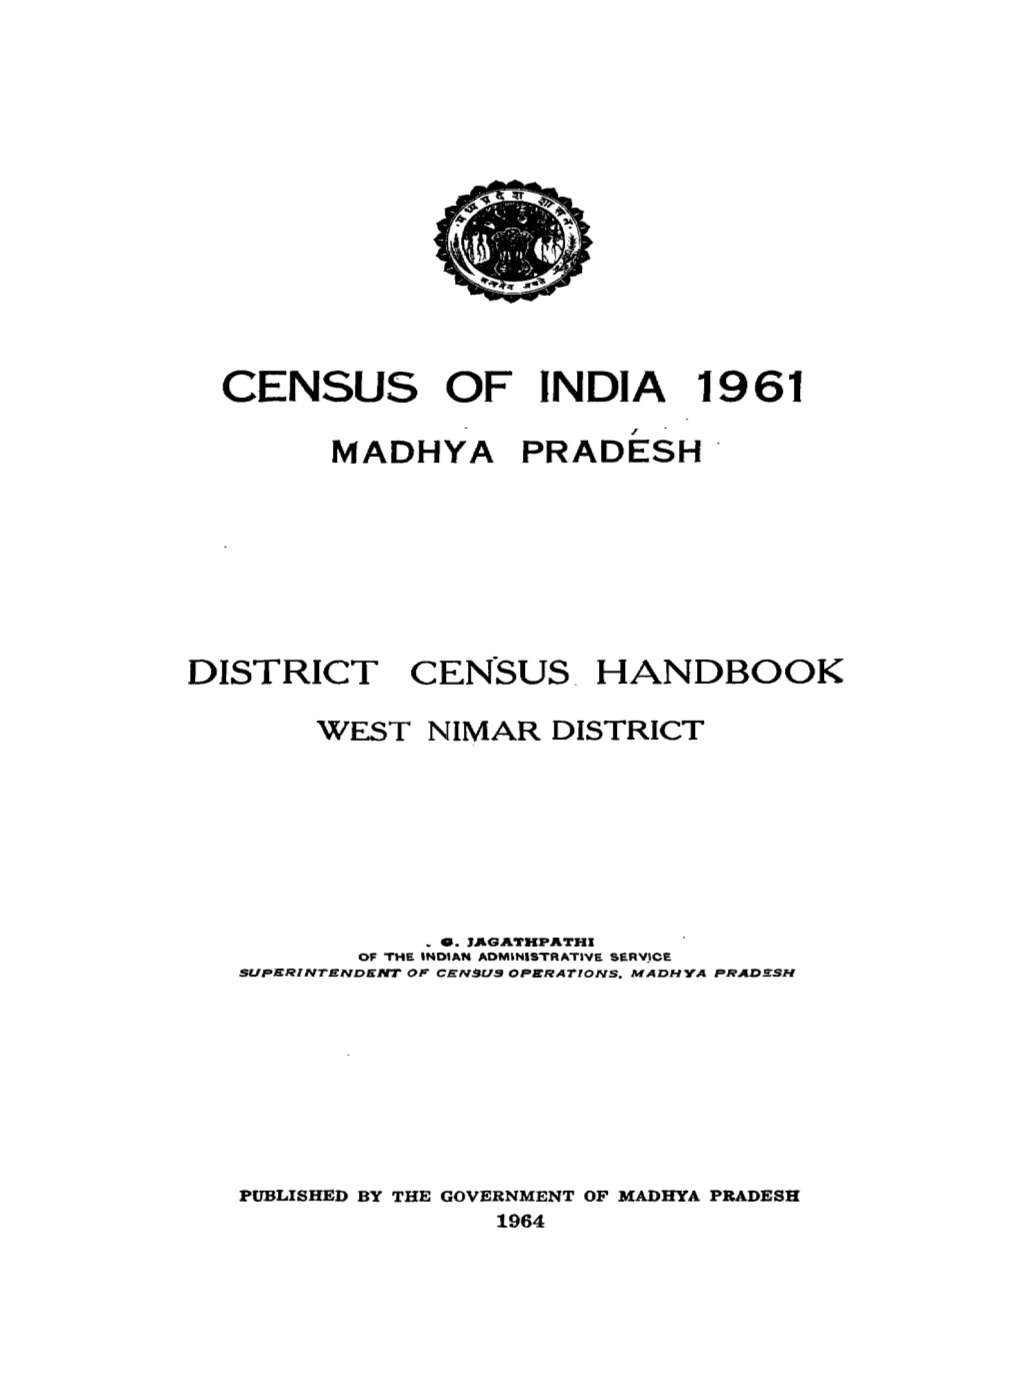 District Census Handbook, West Nimar